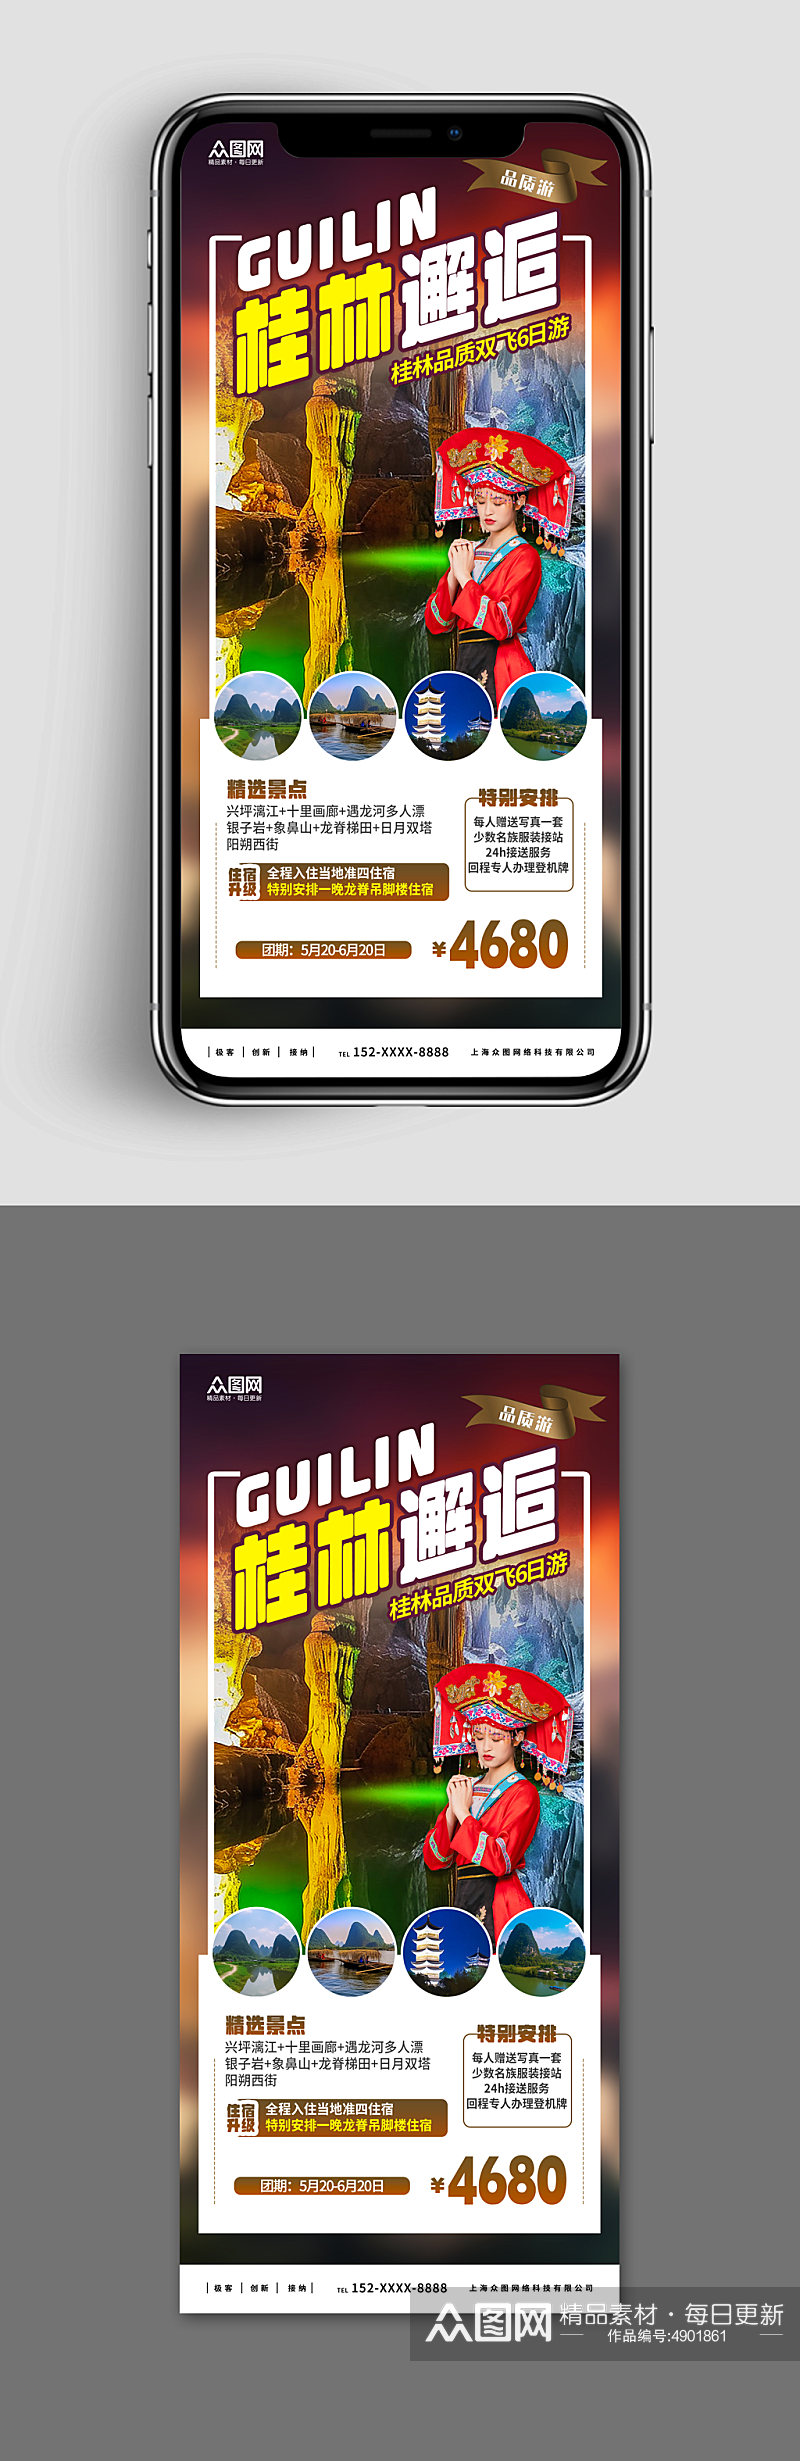 新媒体手机海报国内旅游广西桂林景点旅行社素材